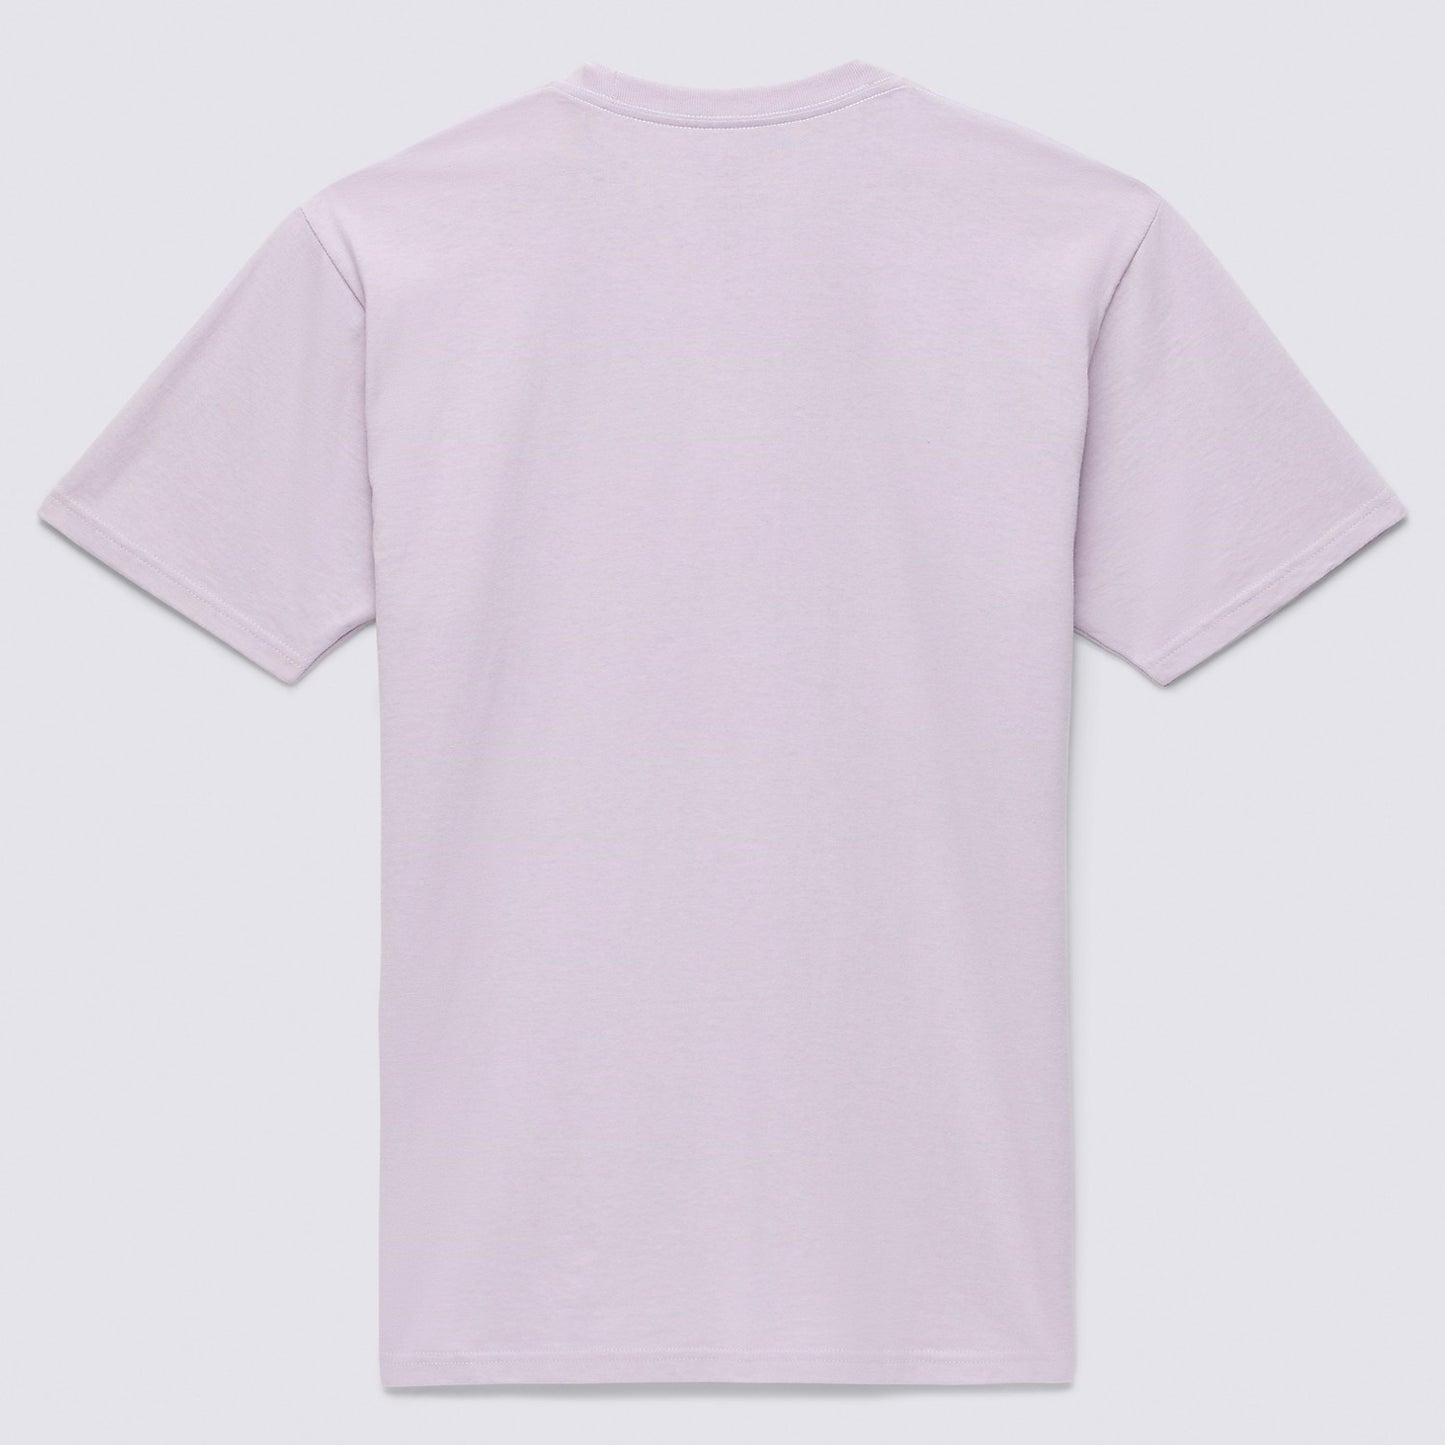 VANS The Lower Corecase T-Shirt - Lavender